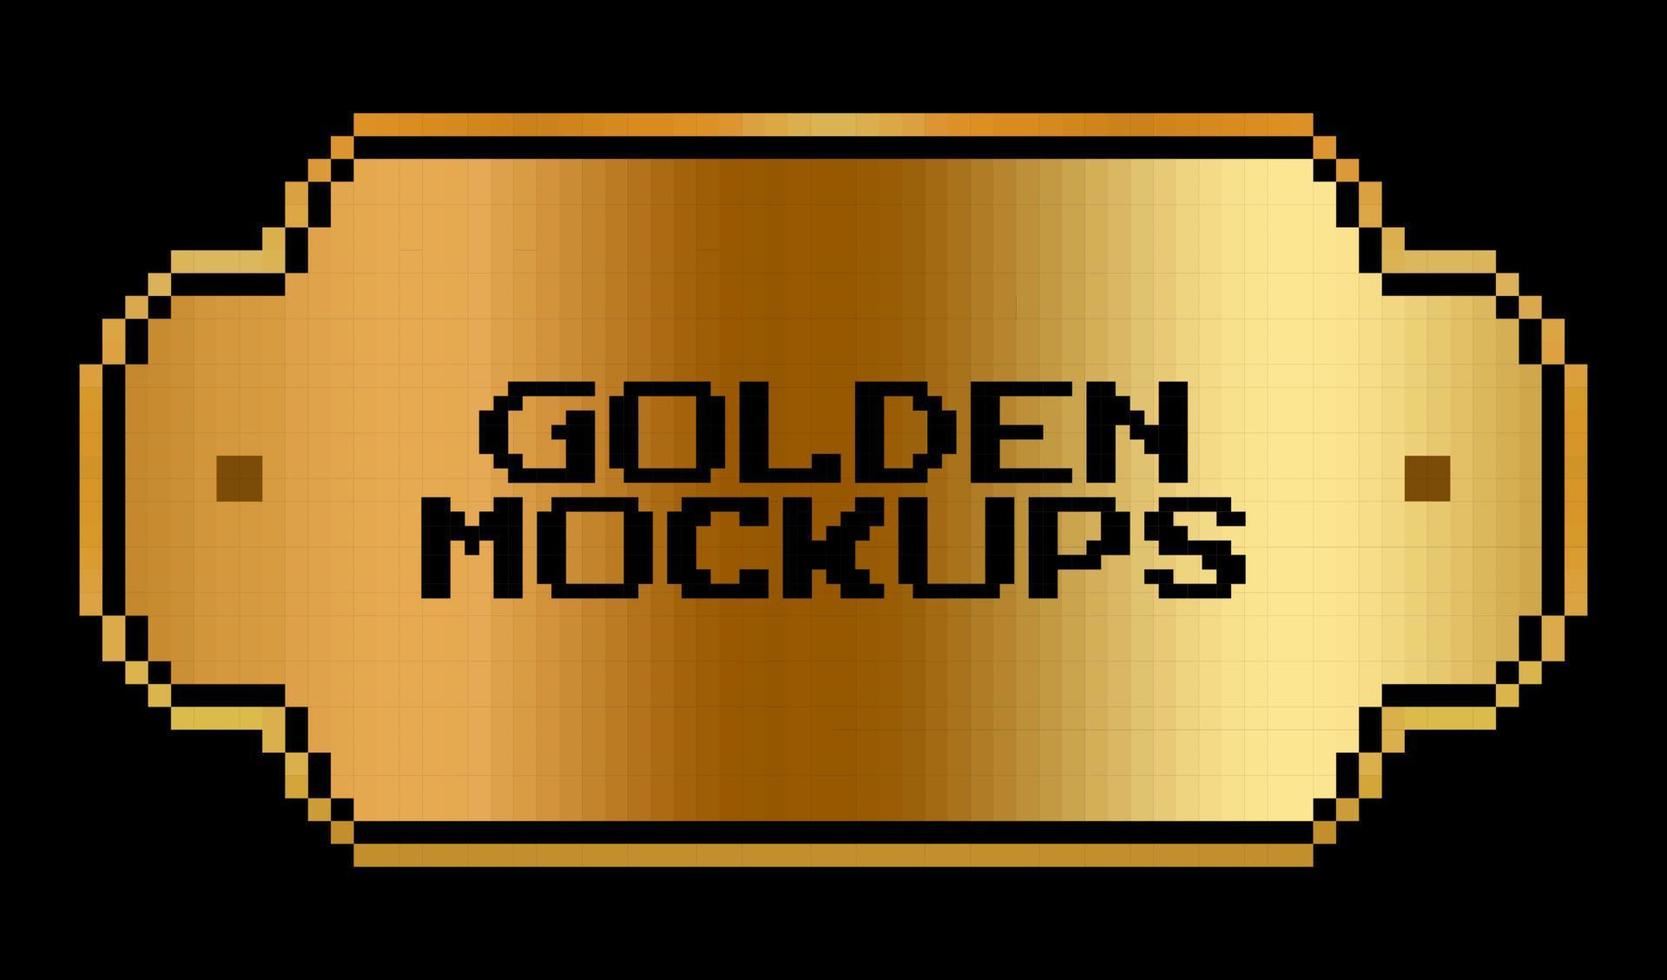 8 bit pixel gyllene ram. gräns text guld för spel tillgångar i vektor illustrationer.